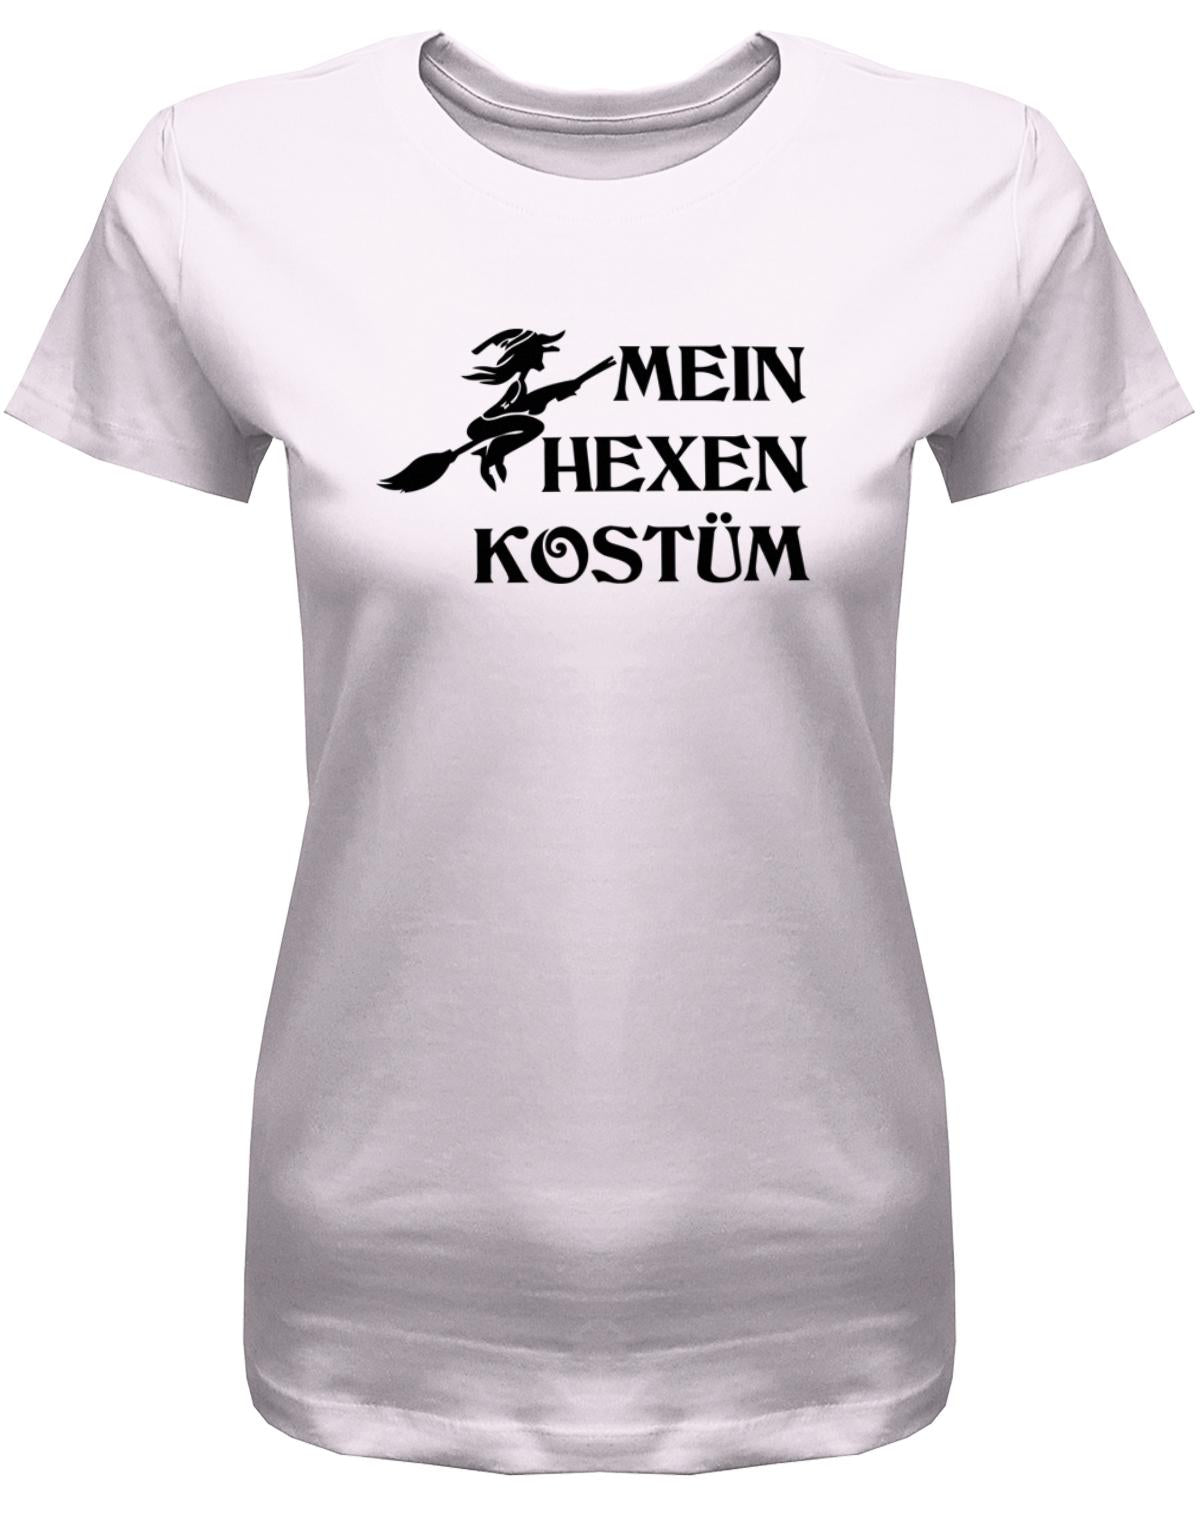 Mein-hexen-Kost-m-Damen-Shirt-Fasching-Karneval-Rosa